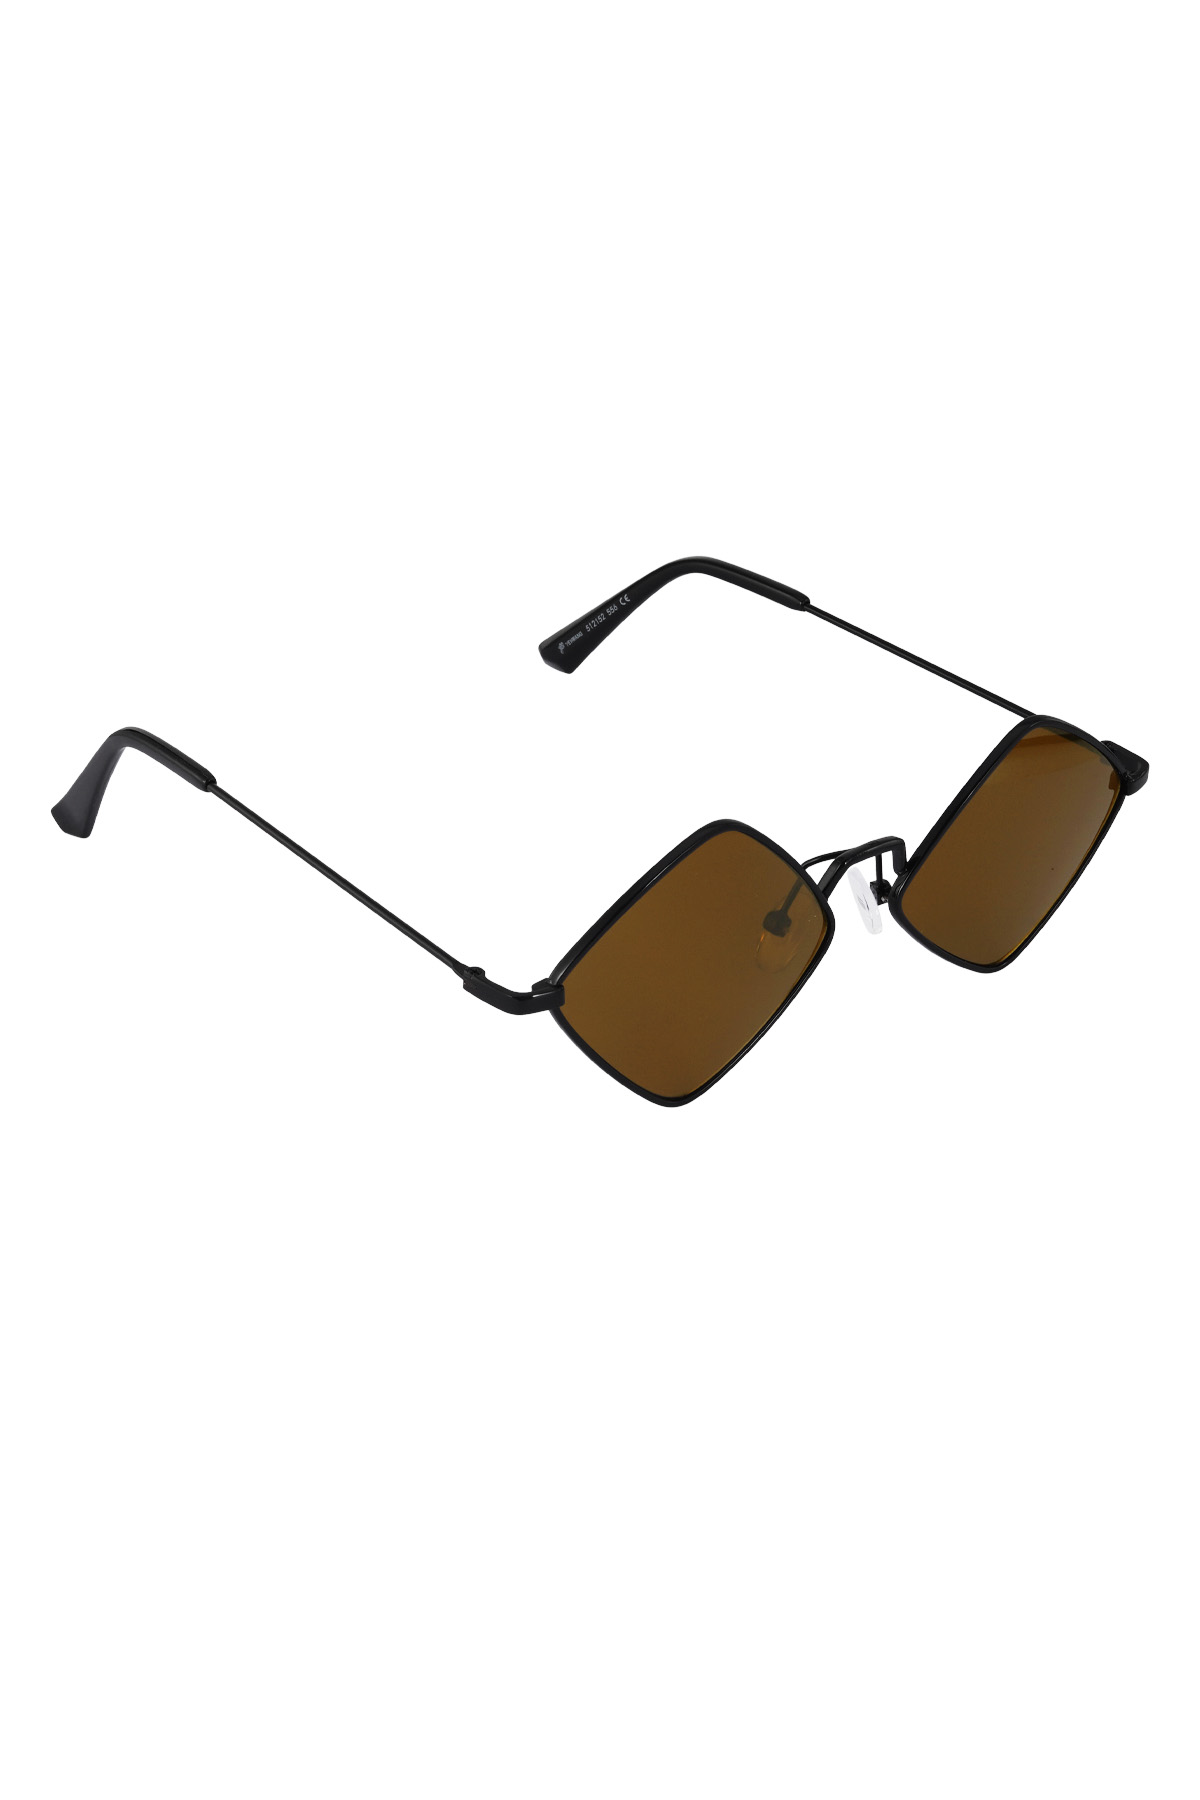 Sonnenbrille Brilliance - braun h5 